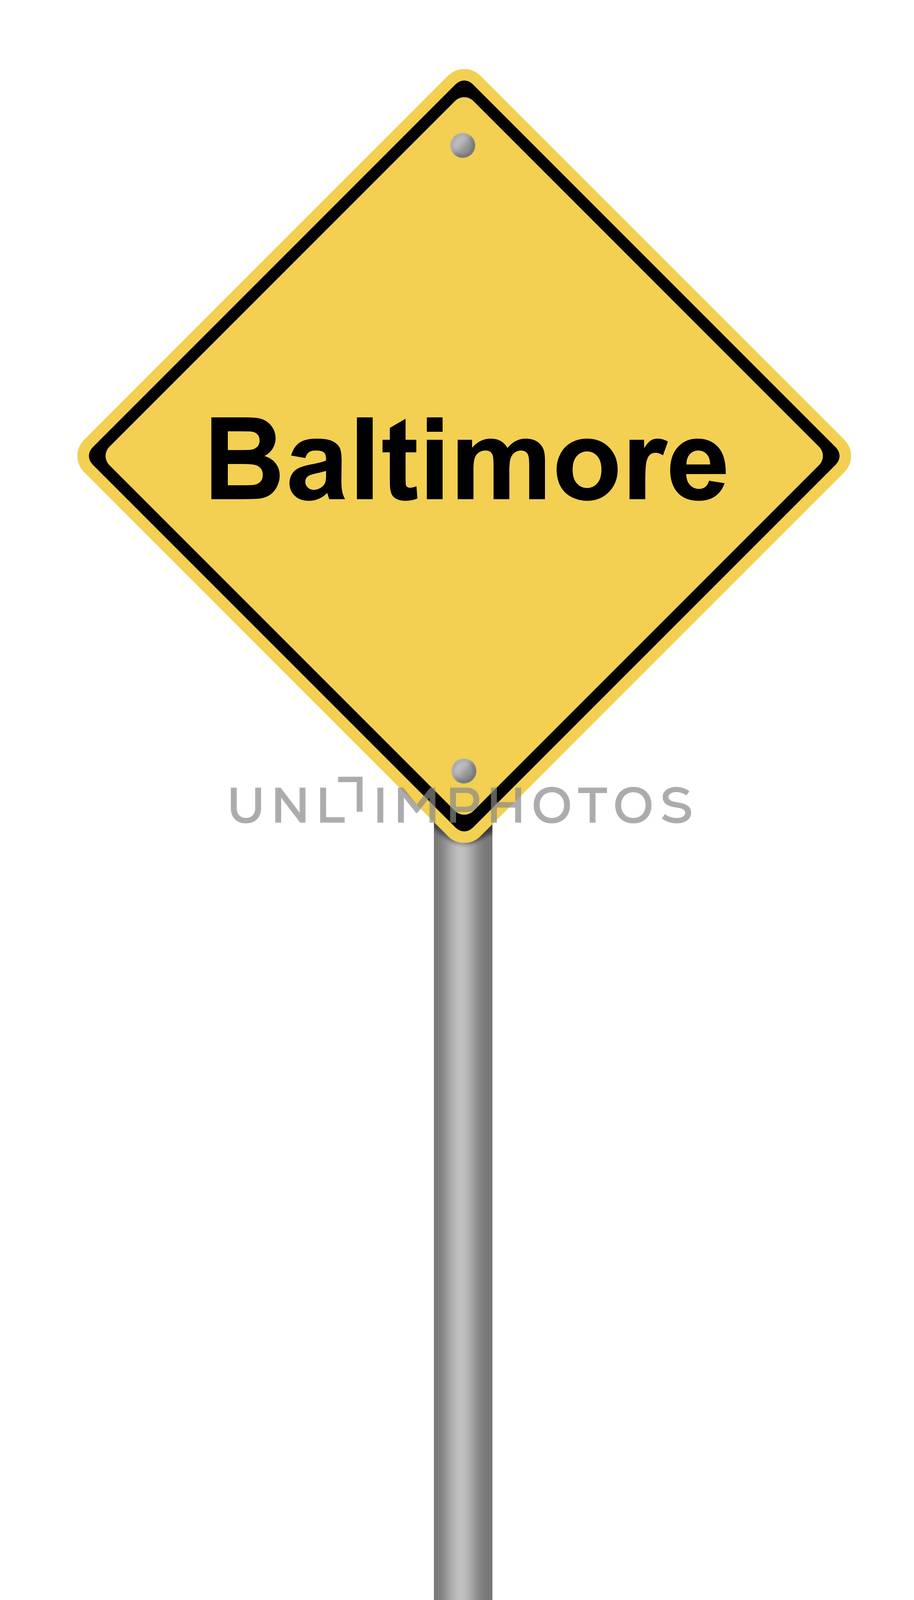 Baltimore Warning Sign by hlehnerer